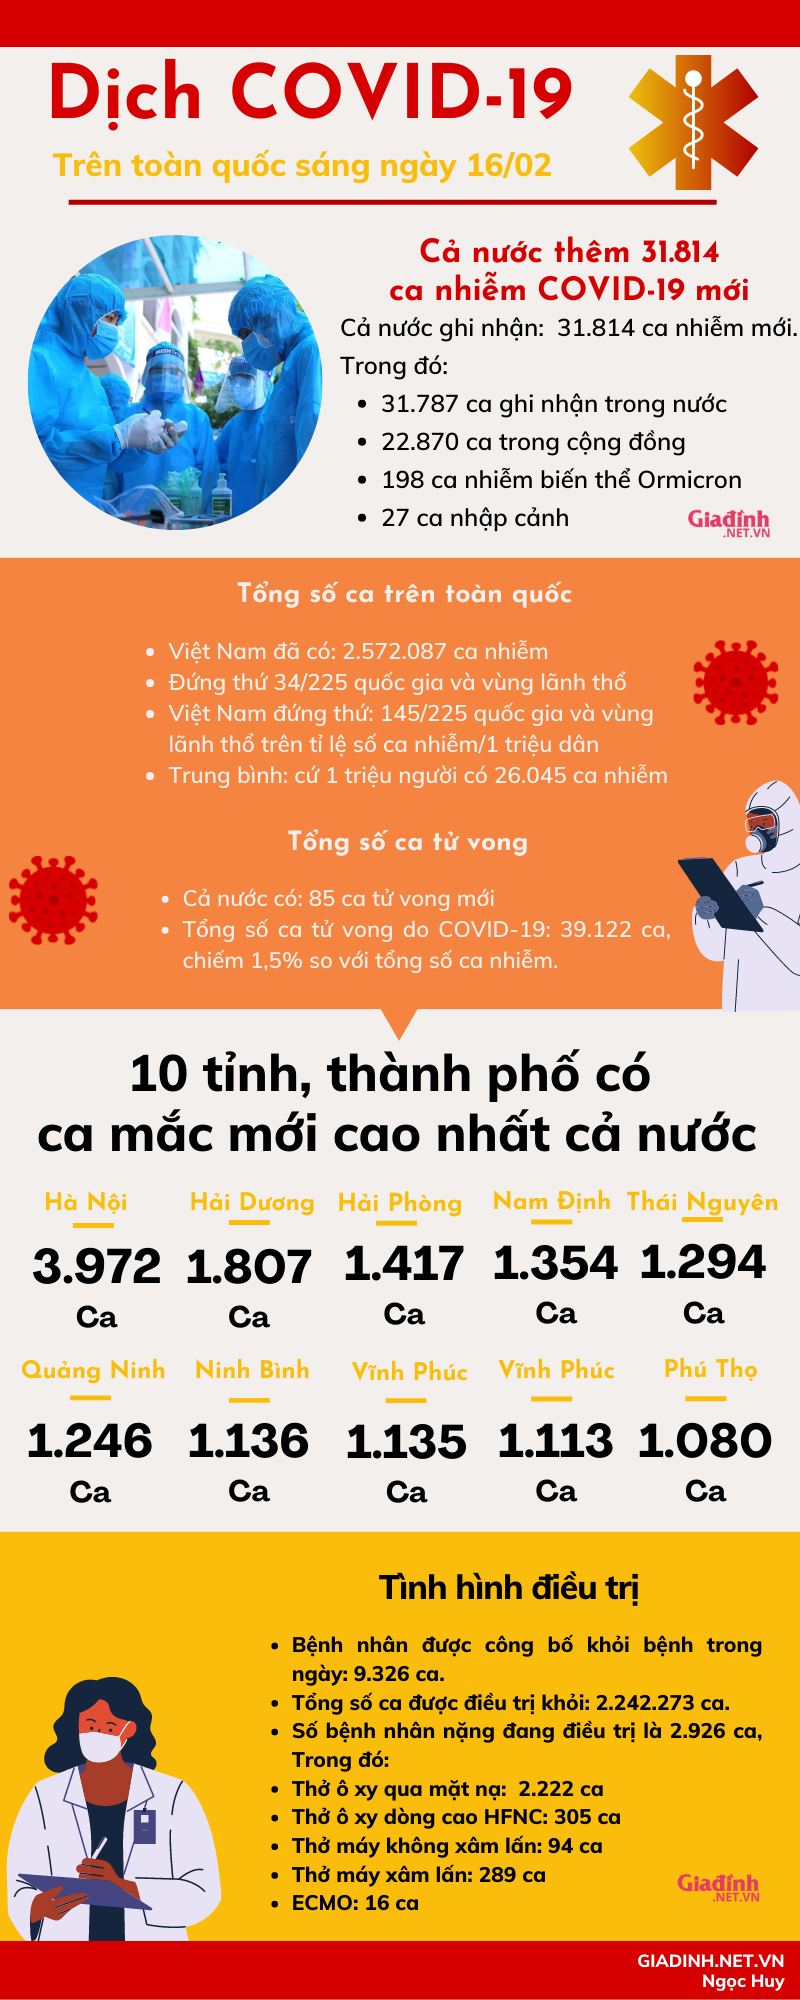 Sáng 16/02: Hà Nội có 3.972 ca mắc COVID-19 mới, số ca bệnh cả nước tiếp tục tăng cao - Ảnh 1.